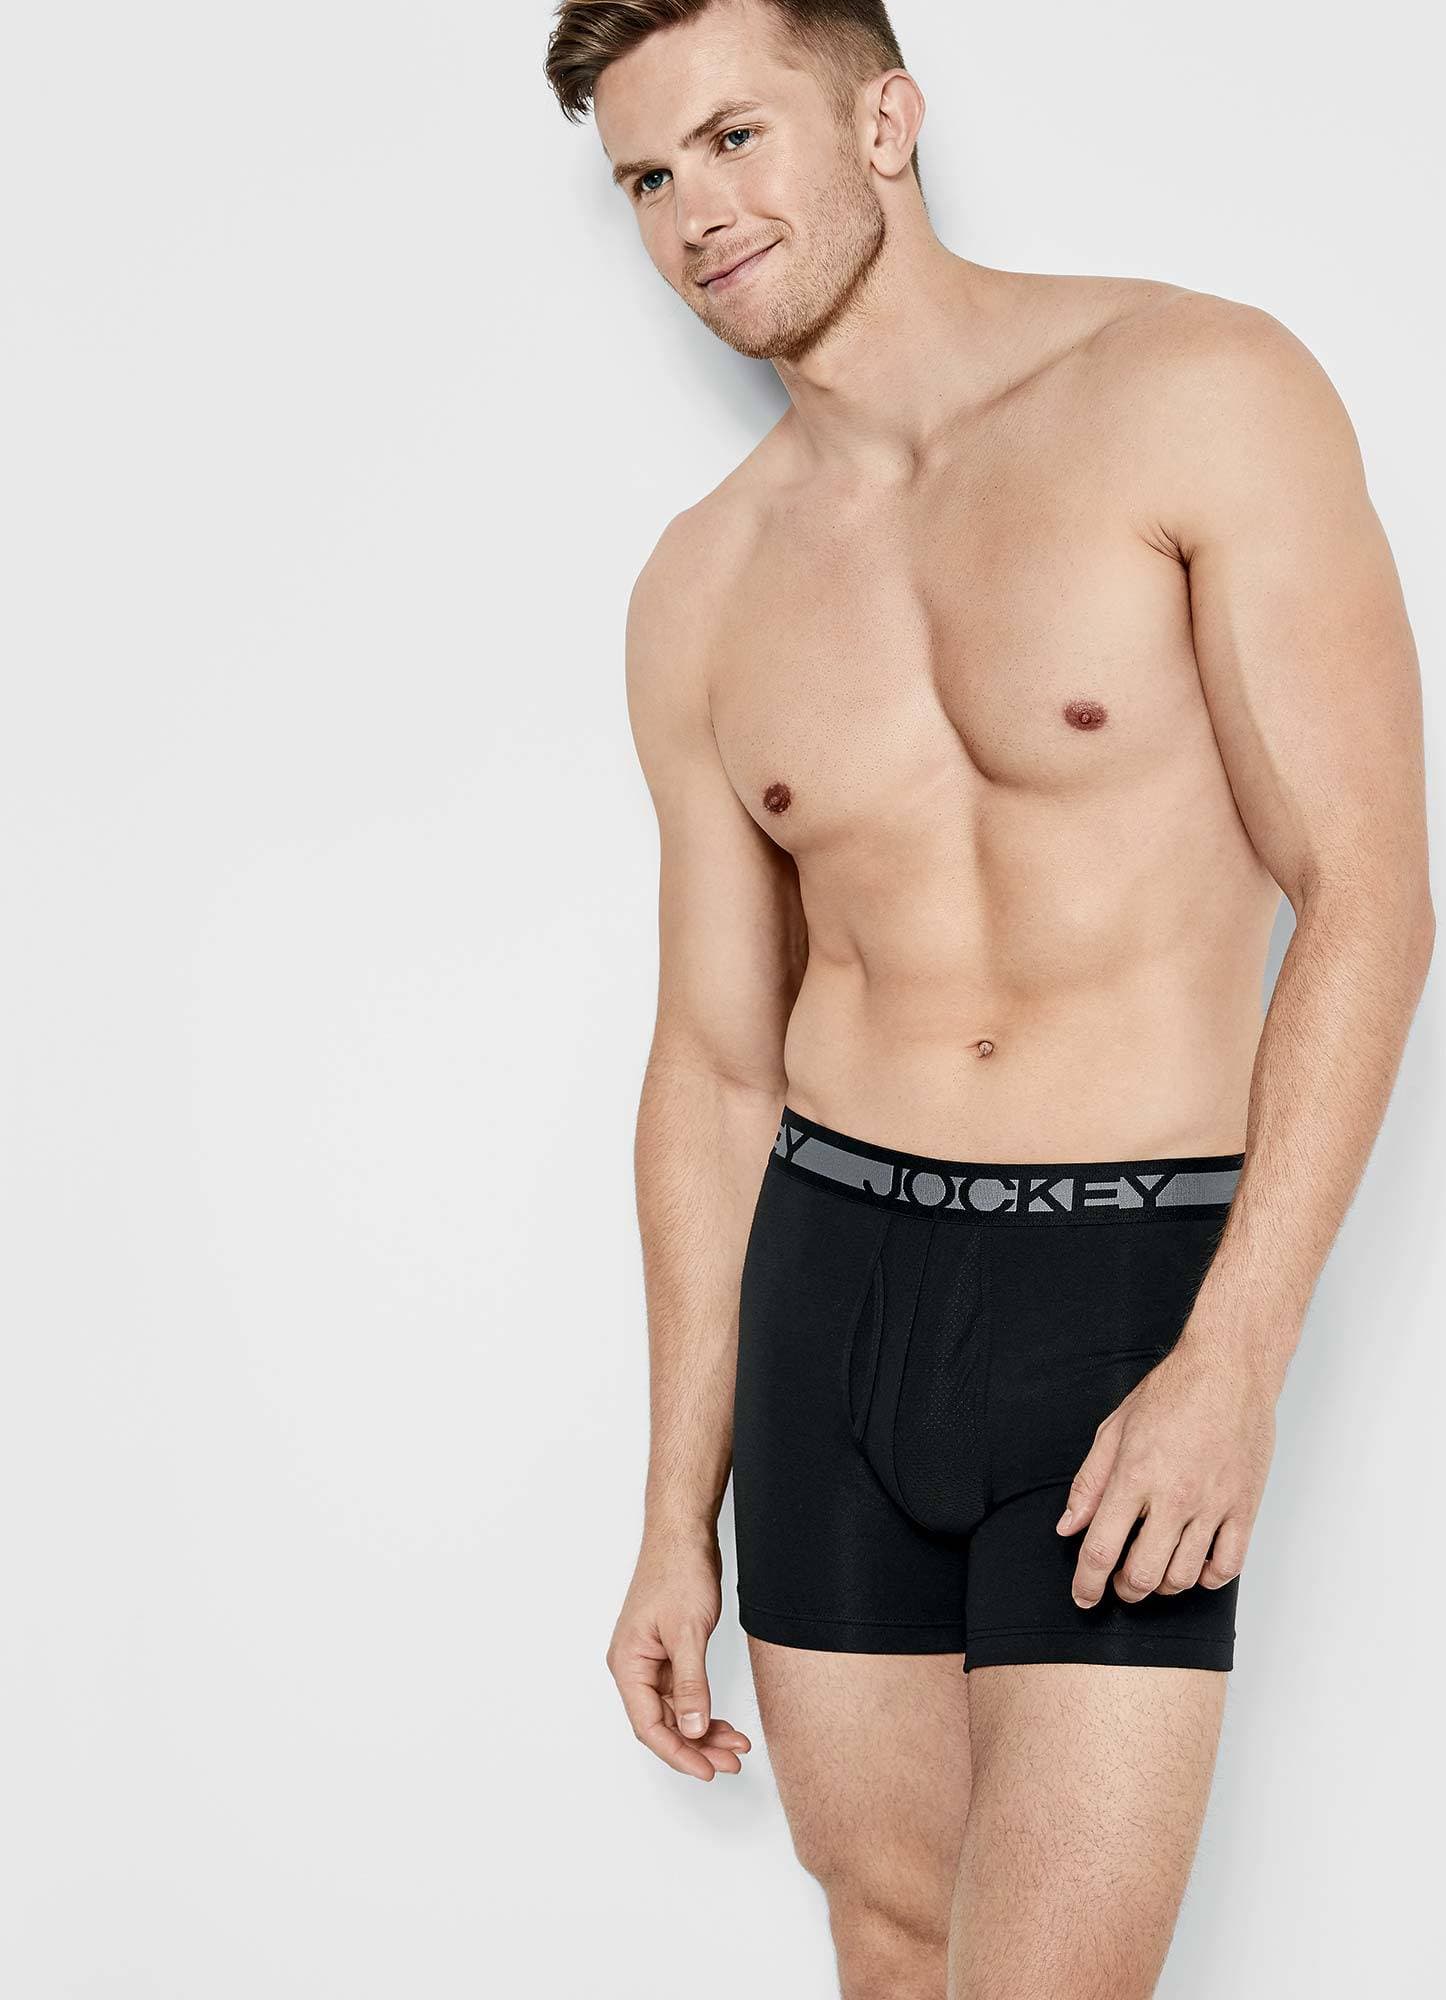 PUMP! Designer Fashion Men's Underwear - Briefs, Jocks, Boxer